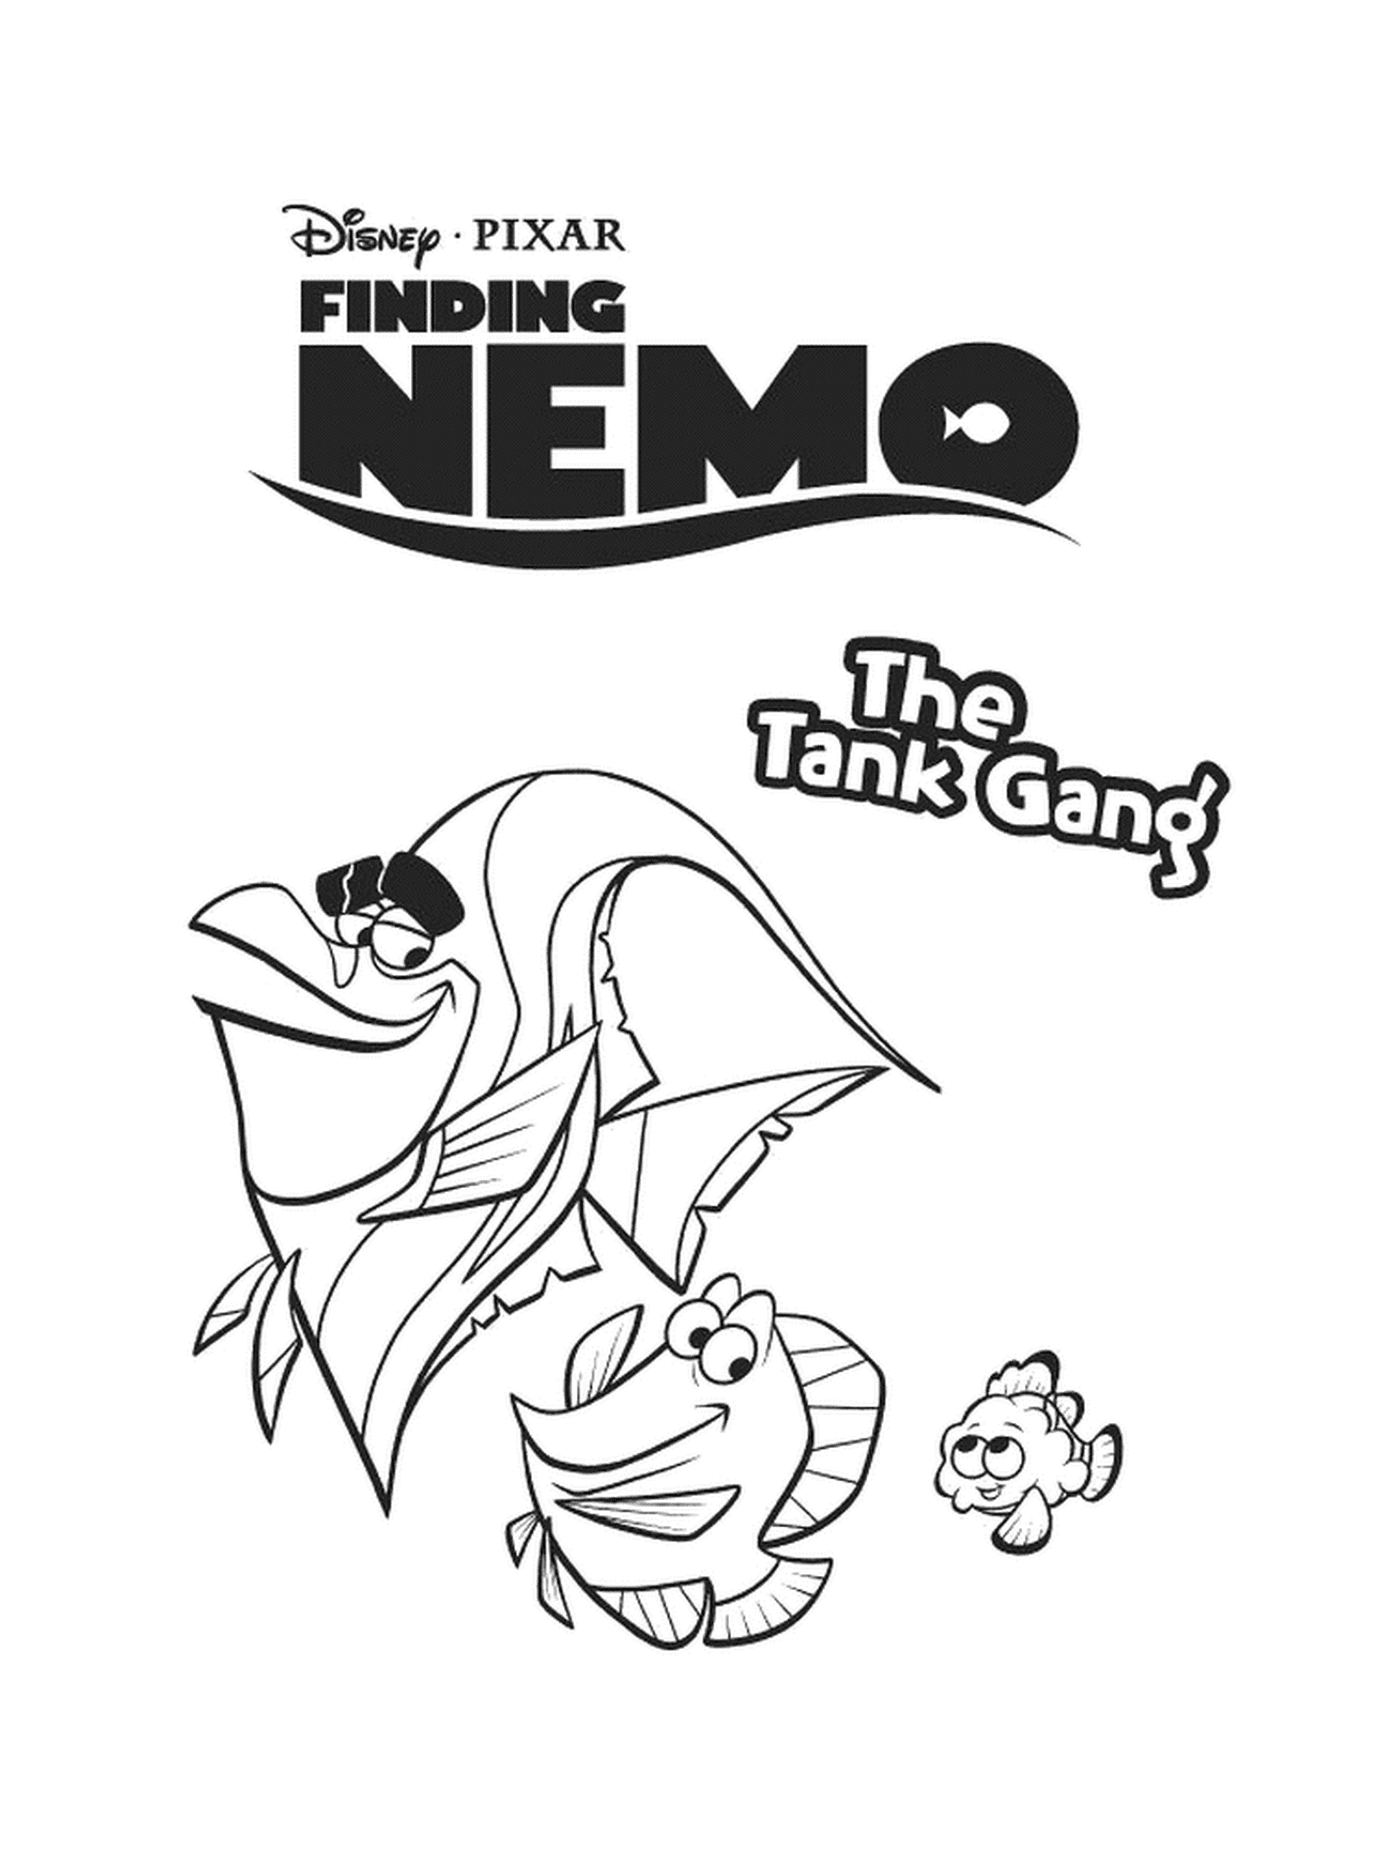  Find Nemo - 坦克小组 